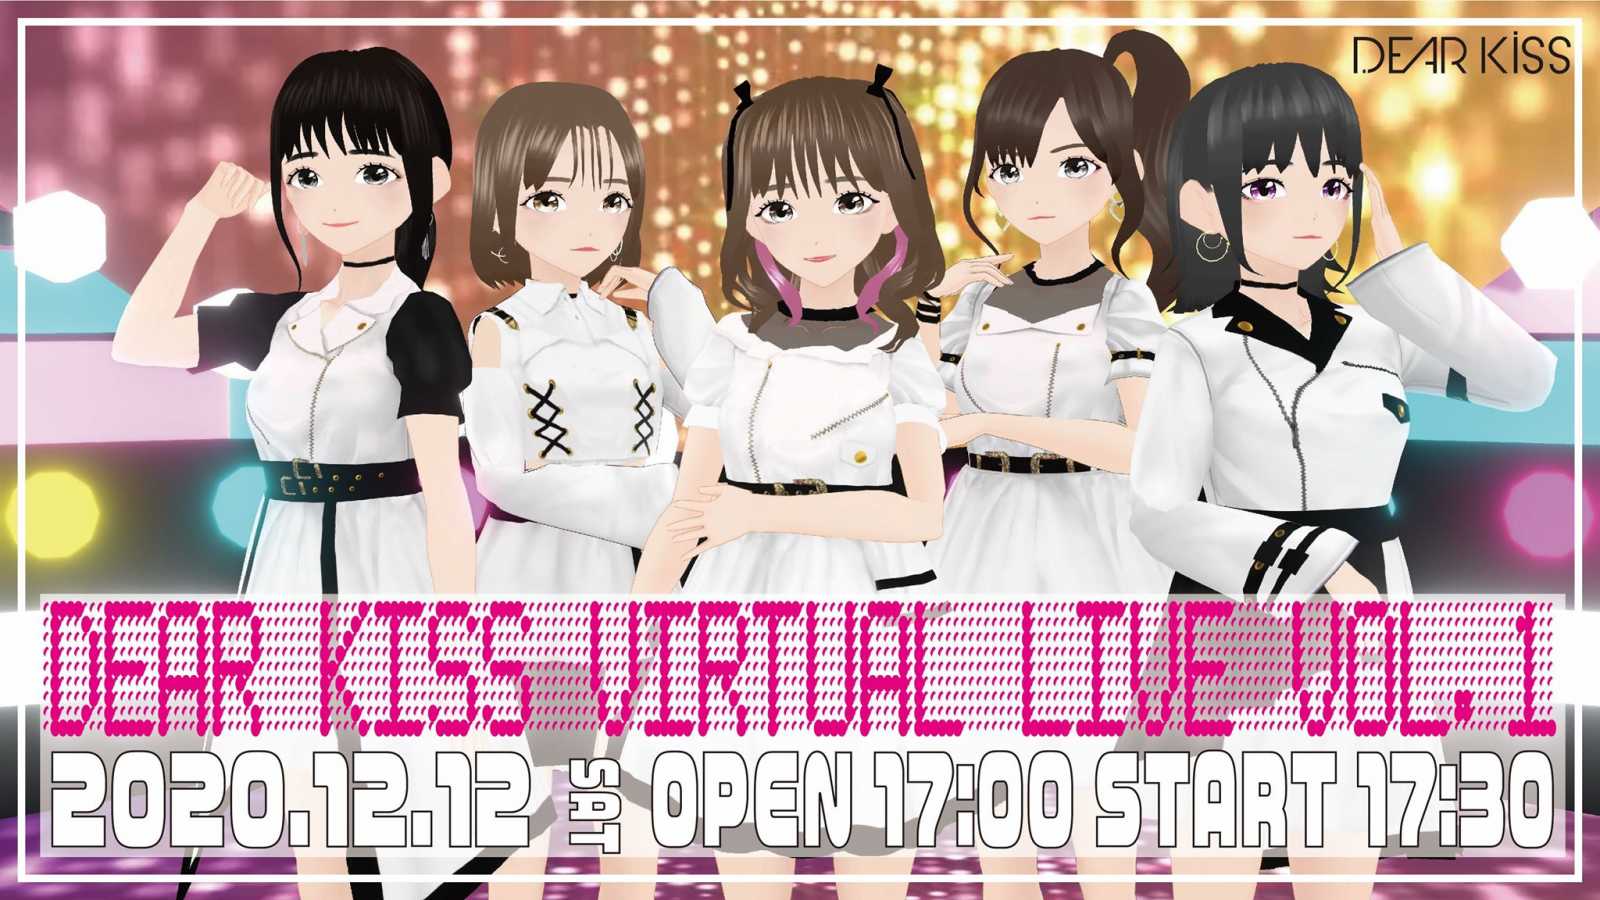 DEAR KISS fará o show virtual DEAR KISS VIRTUAL LIVE Vol.1 © DEAR KISS. All rights reserved.